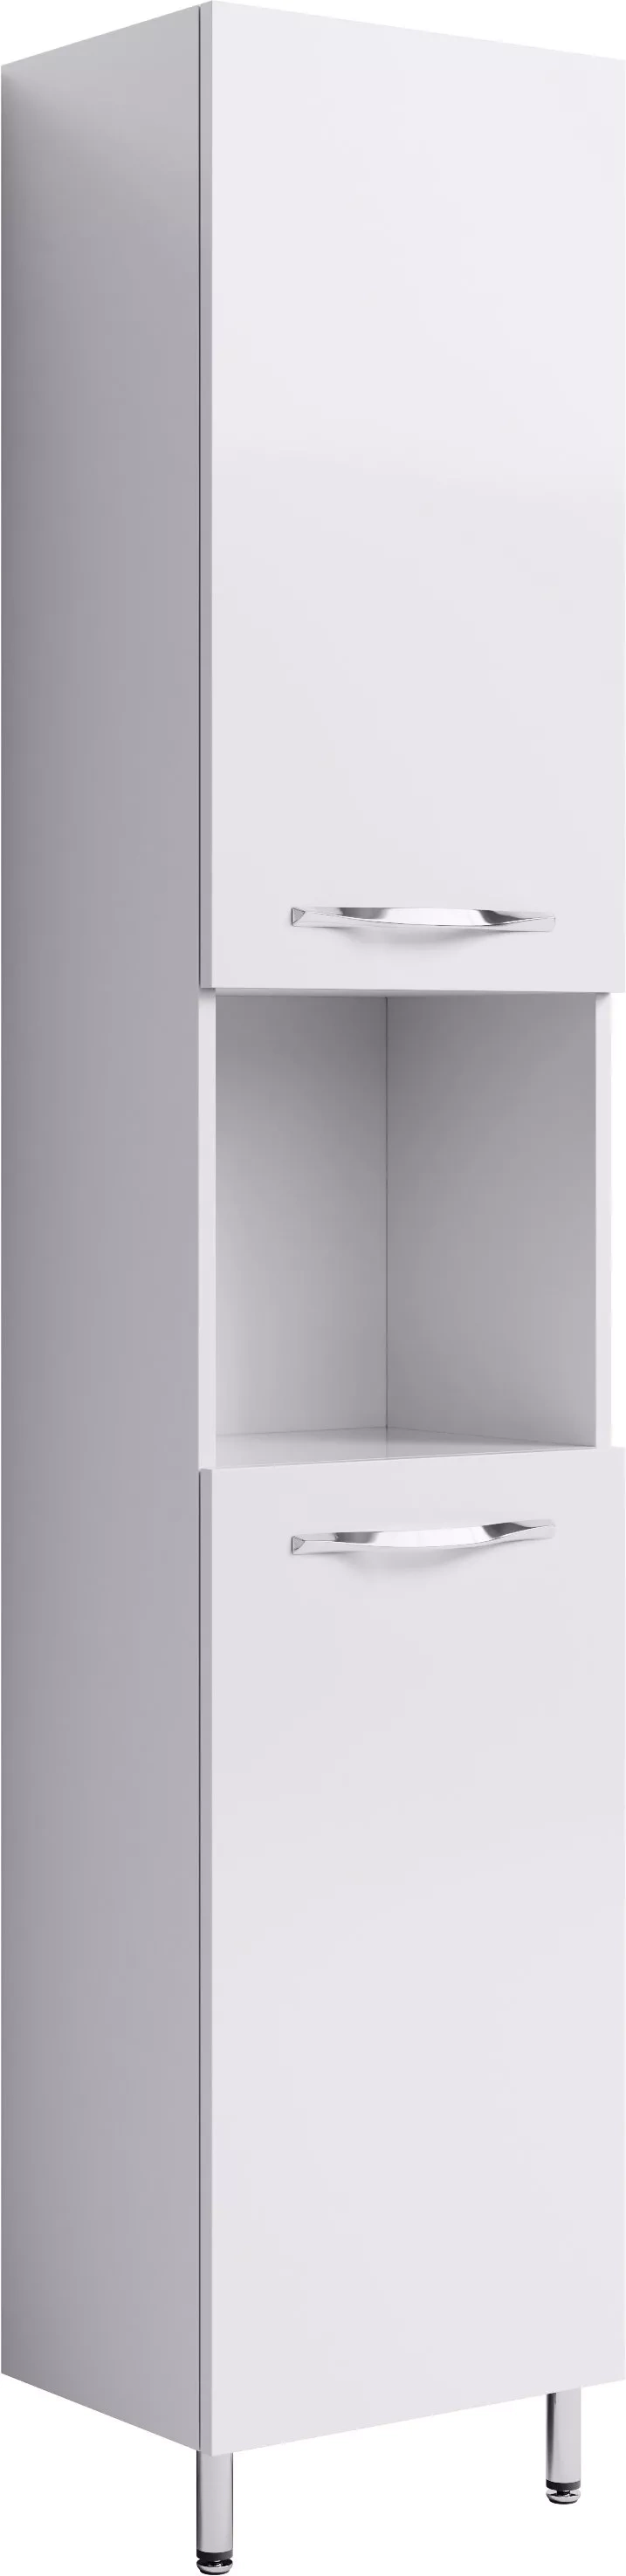 угловой шкаф пенал с корзиной в ванную